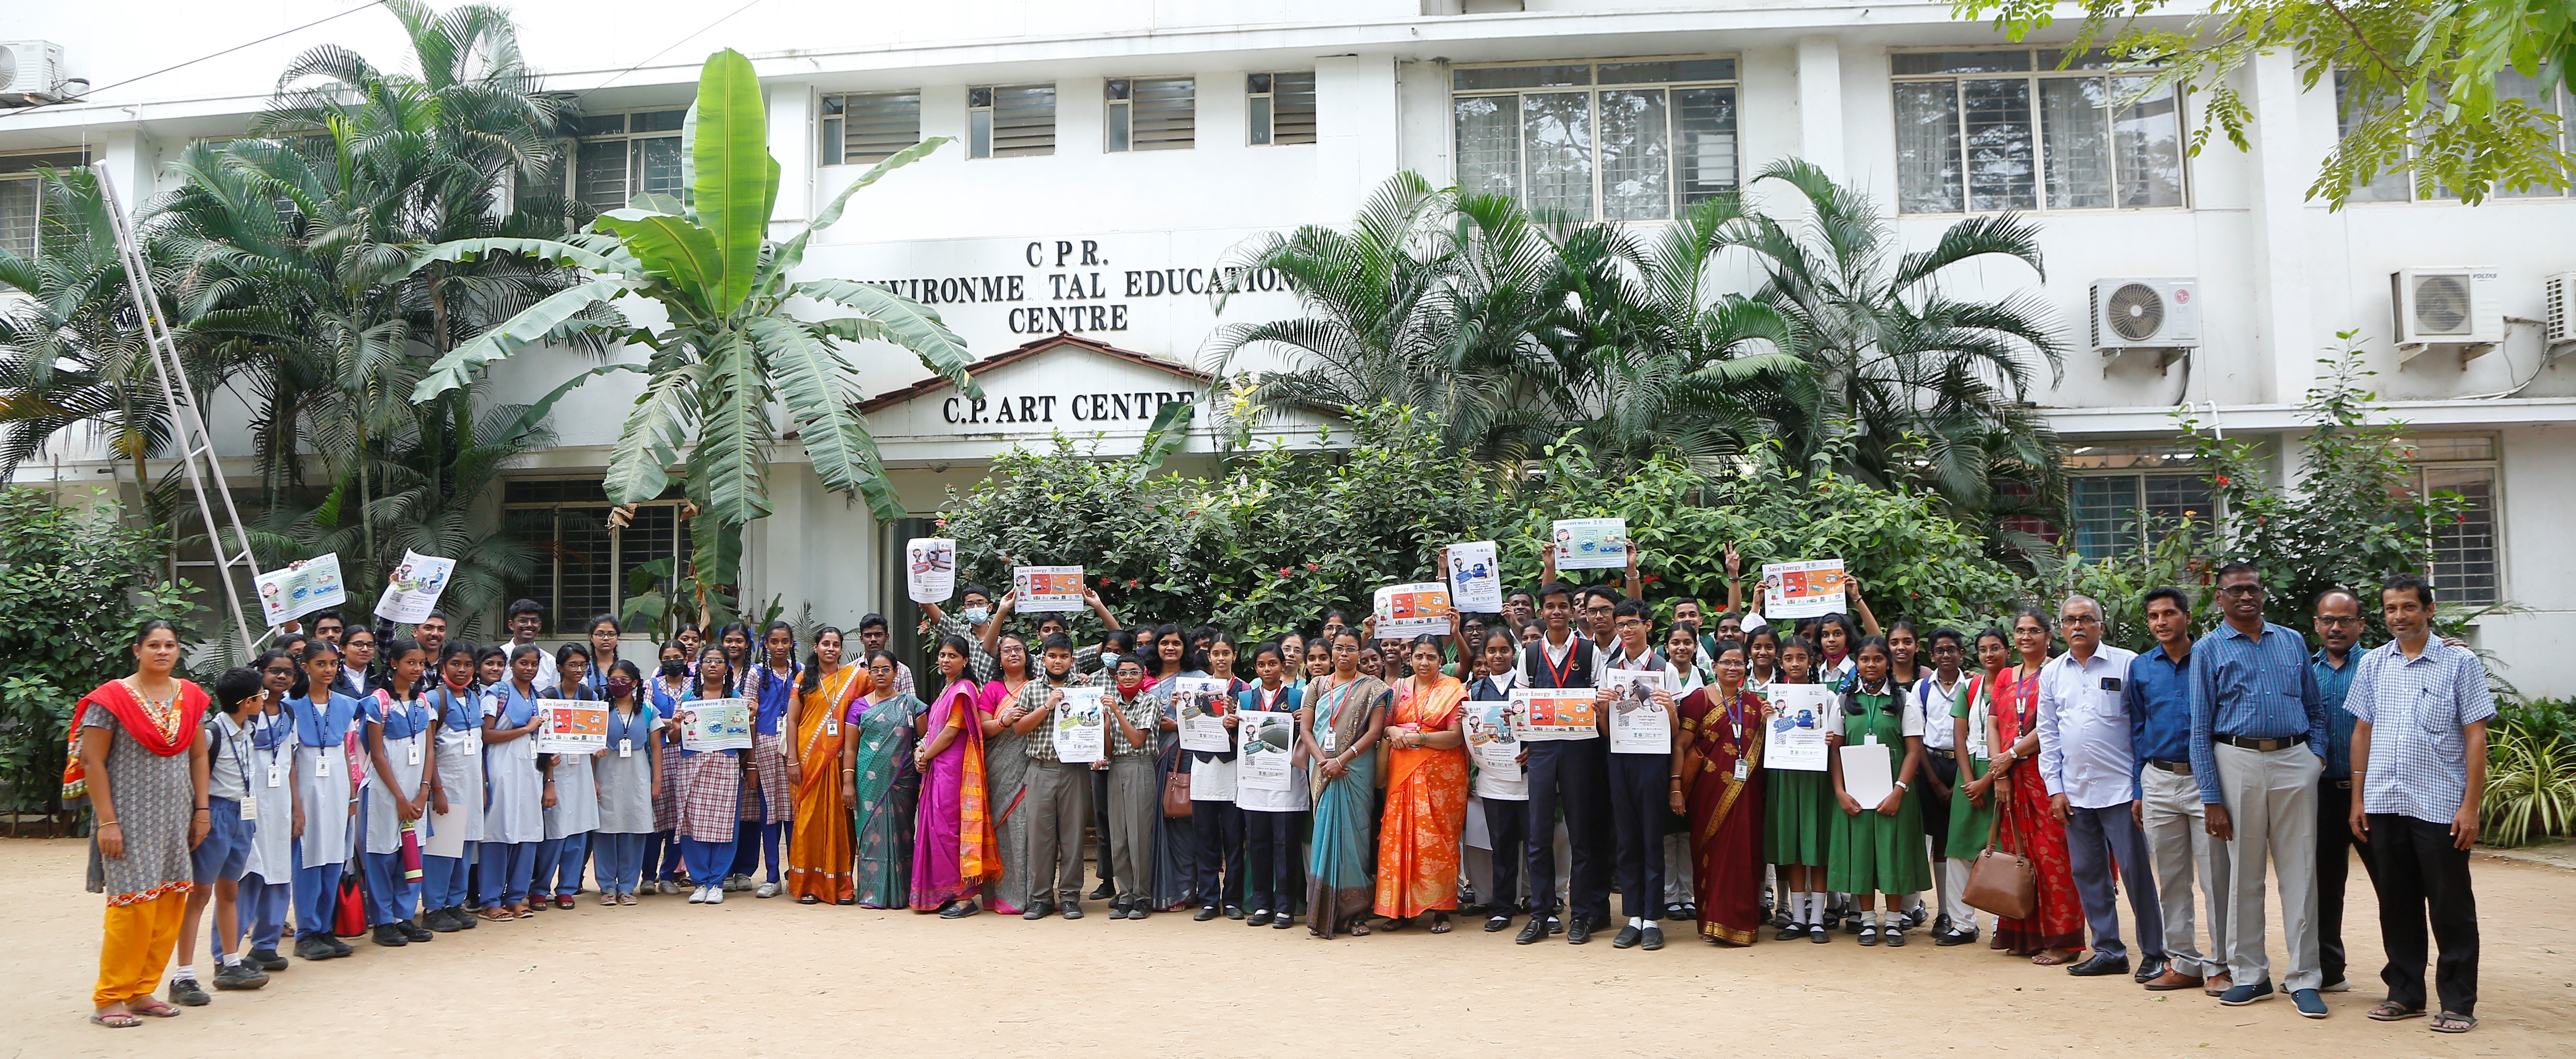 C.P.R. Environmental Education Centre Chennai.